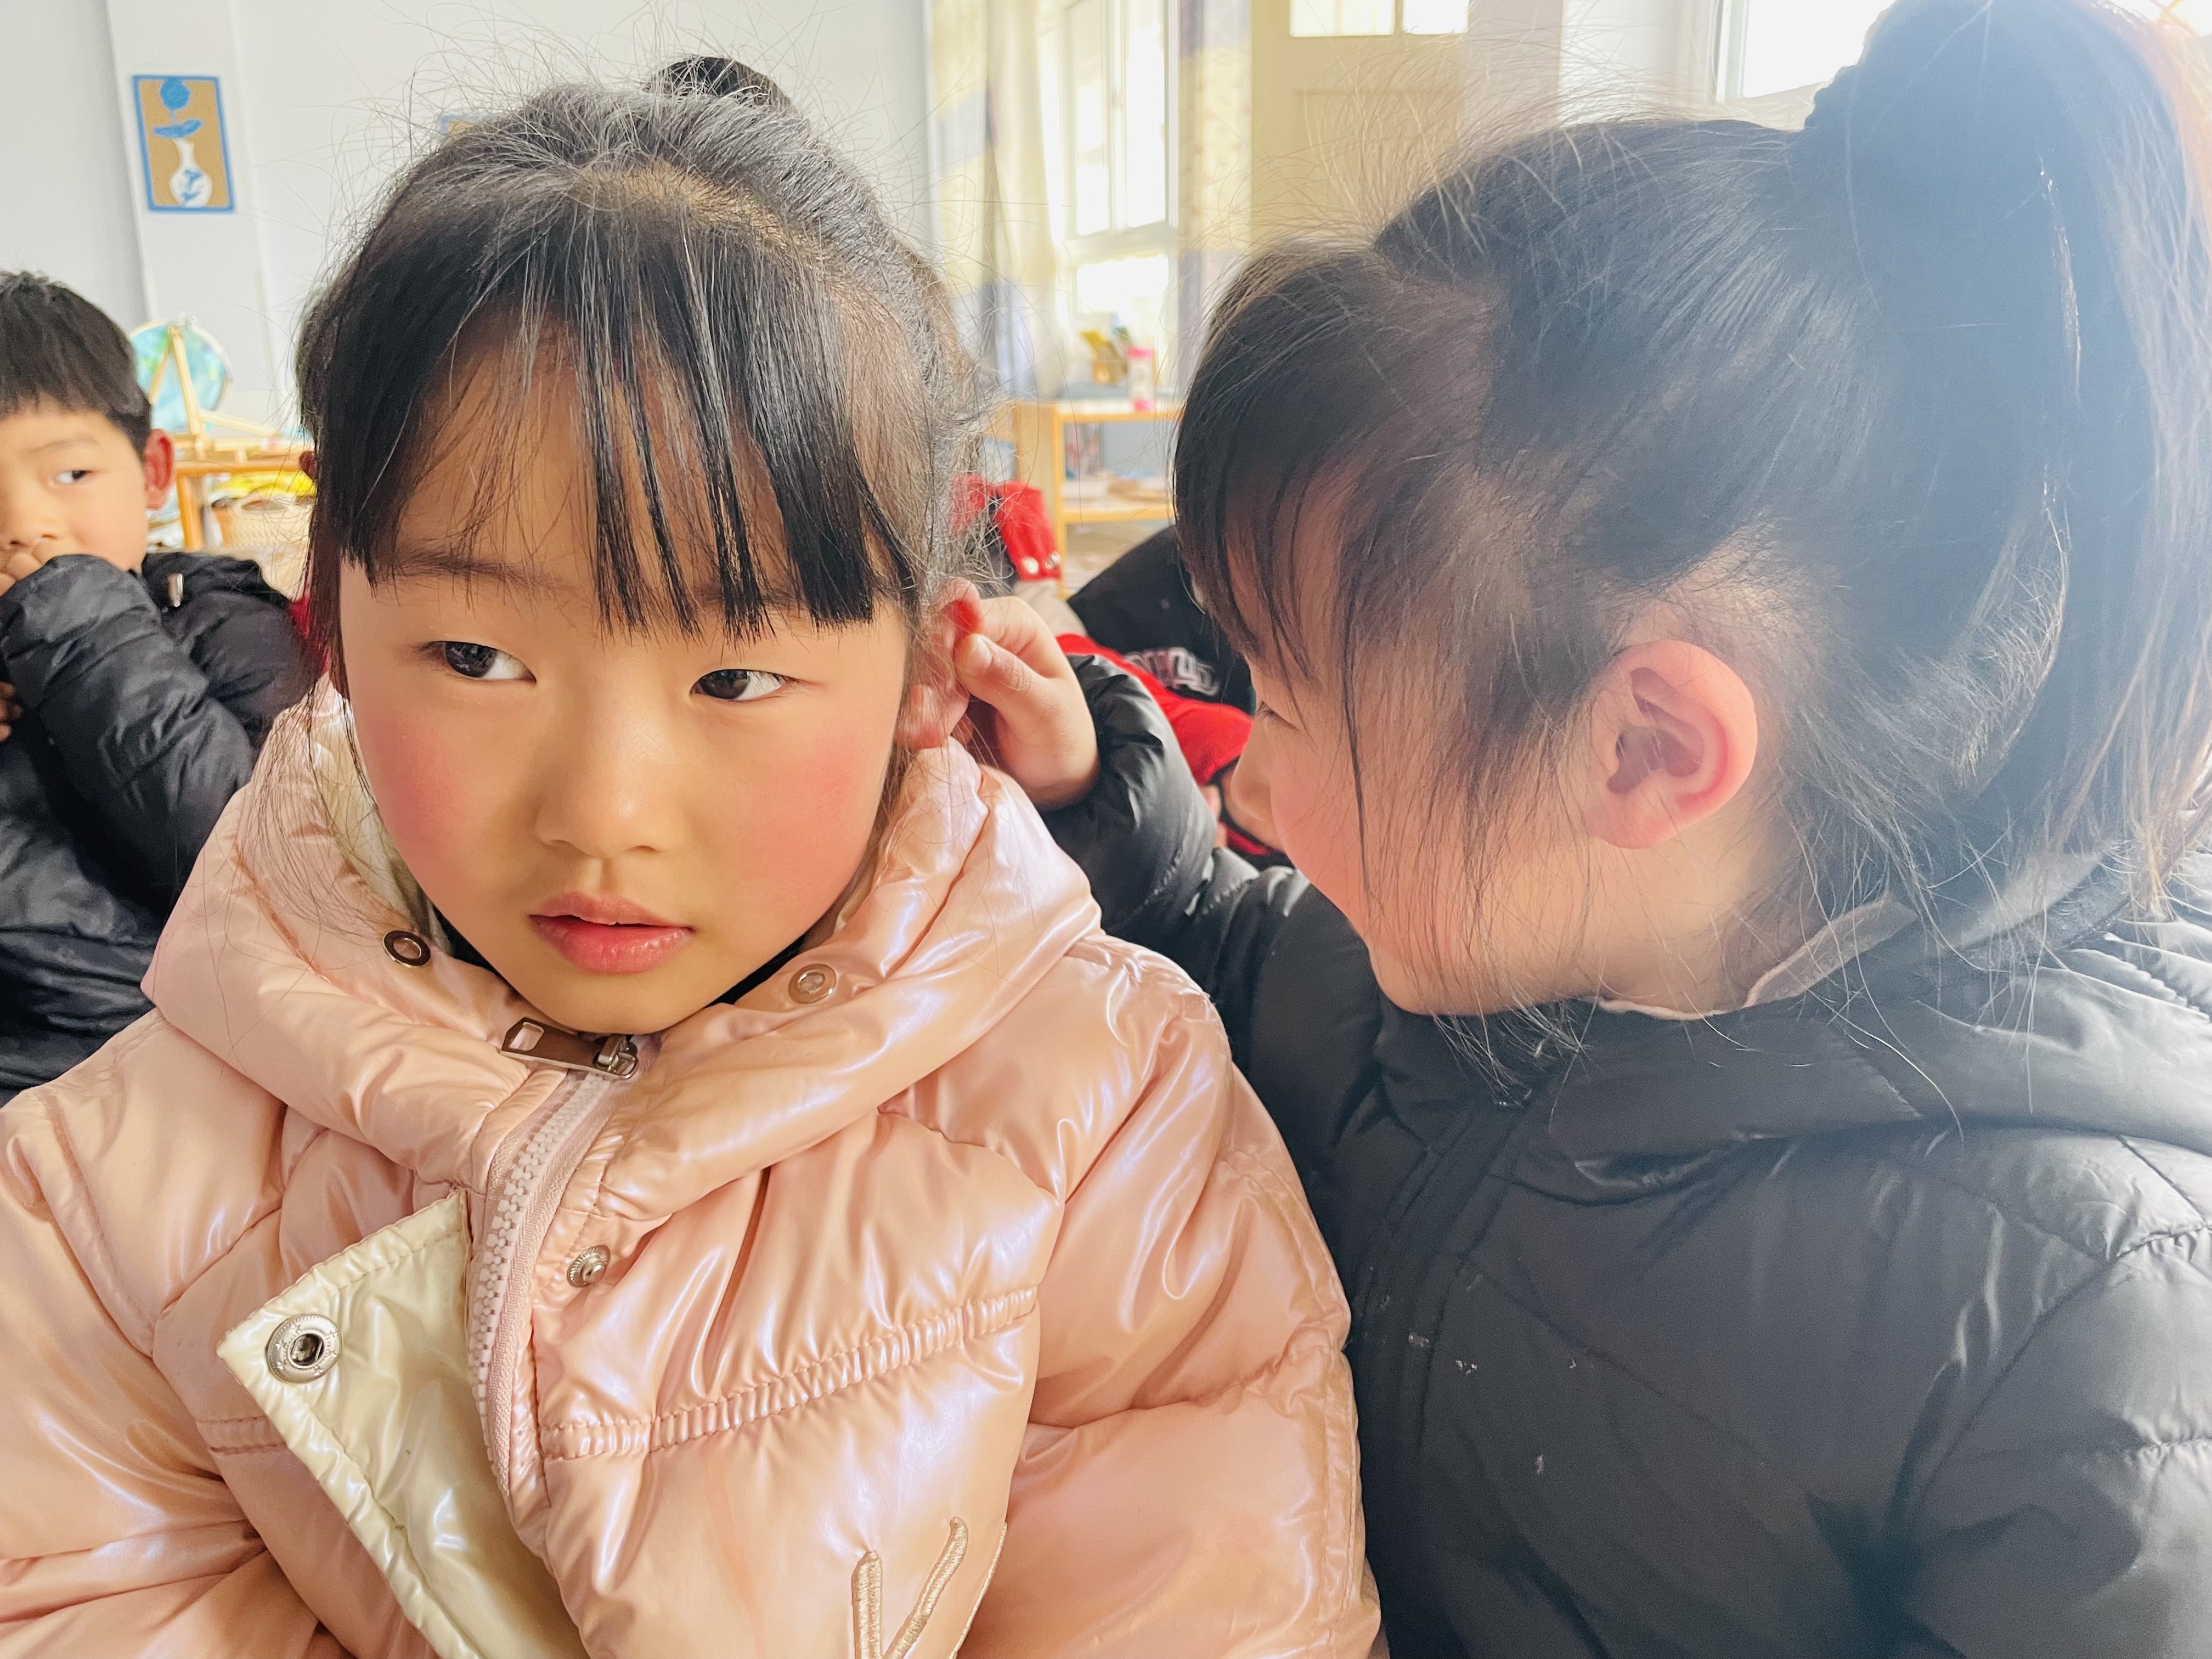 关爱听力健康，聆听精彩未来  ——瓦窑镇中心幼儿园爱耳日活动